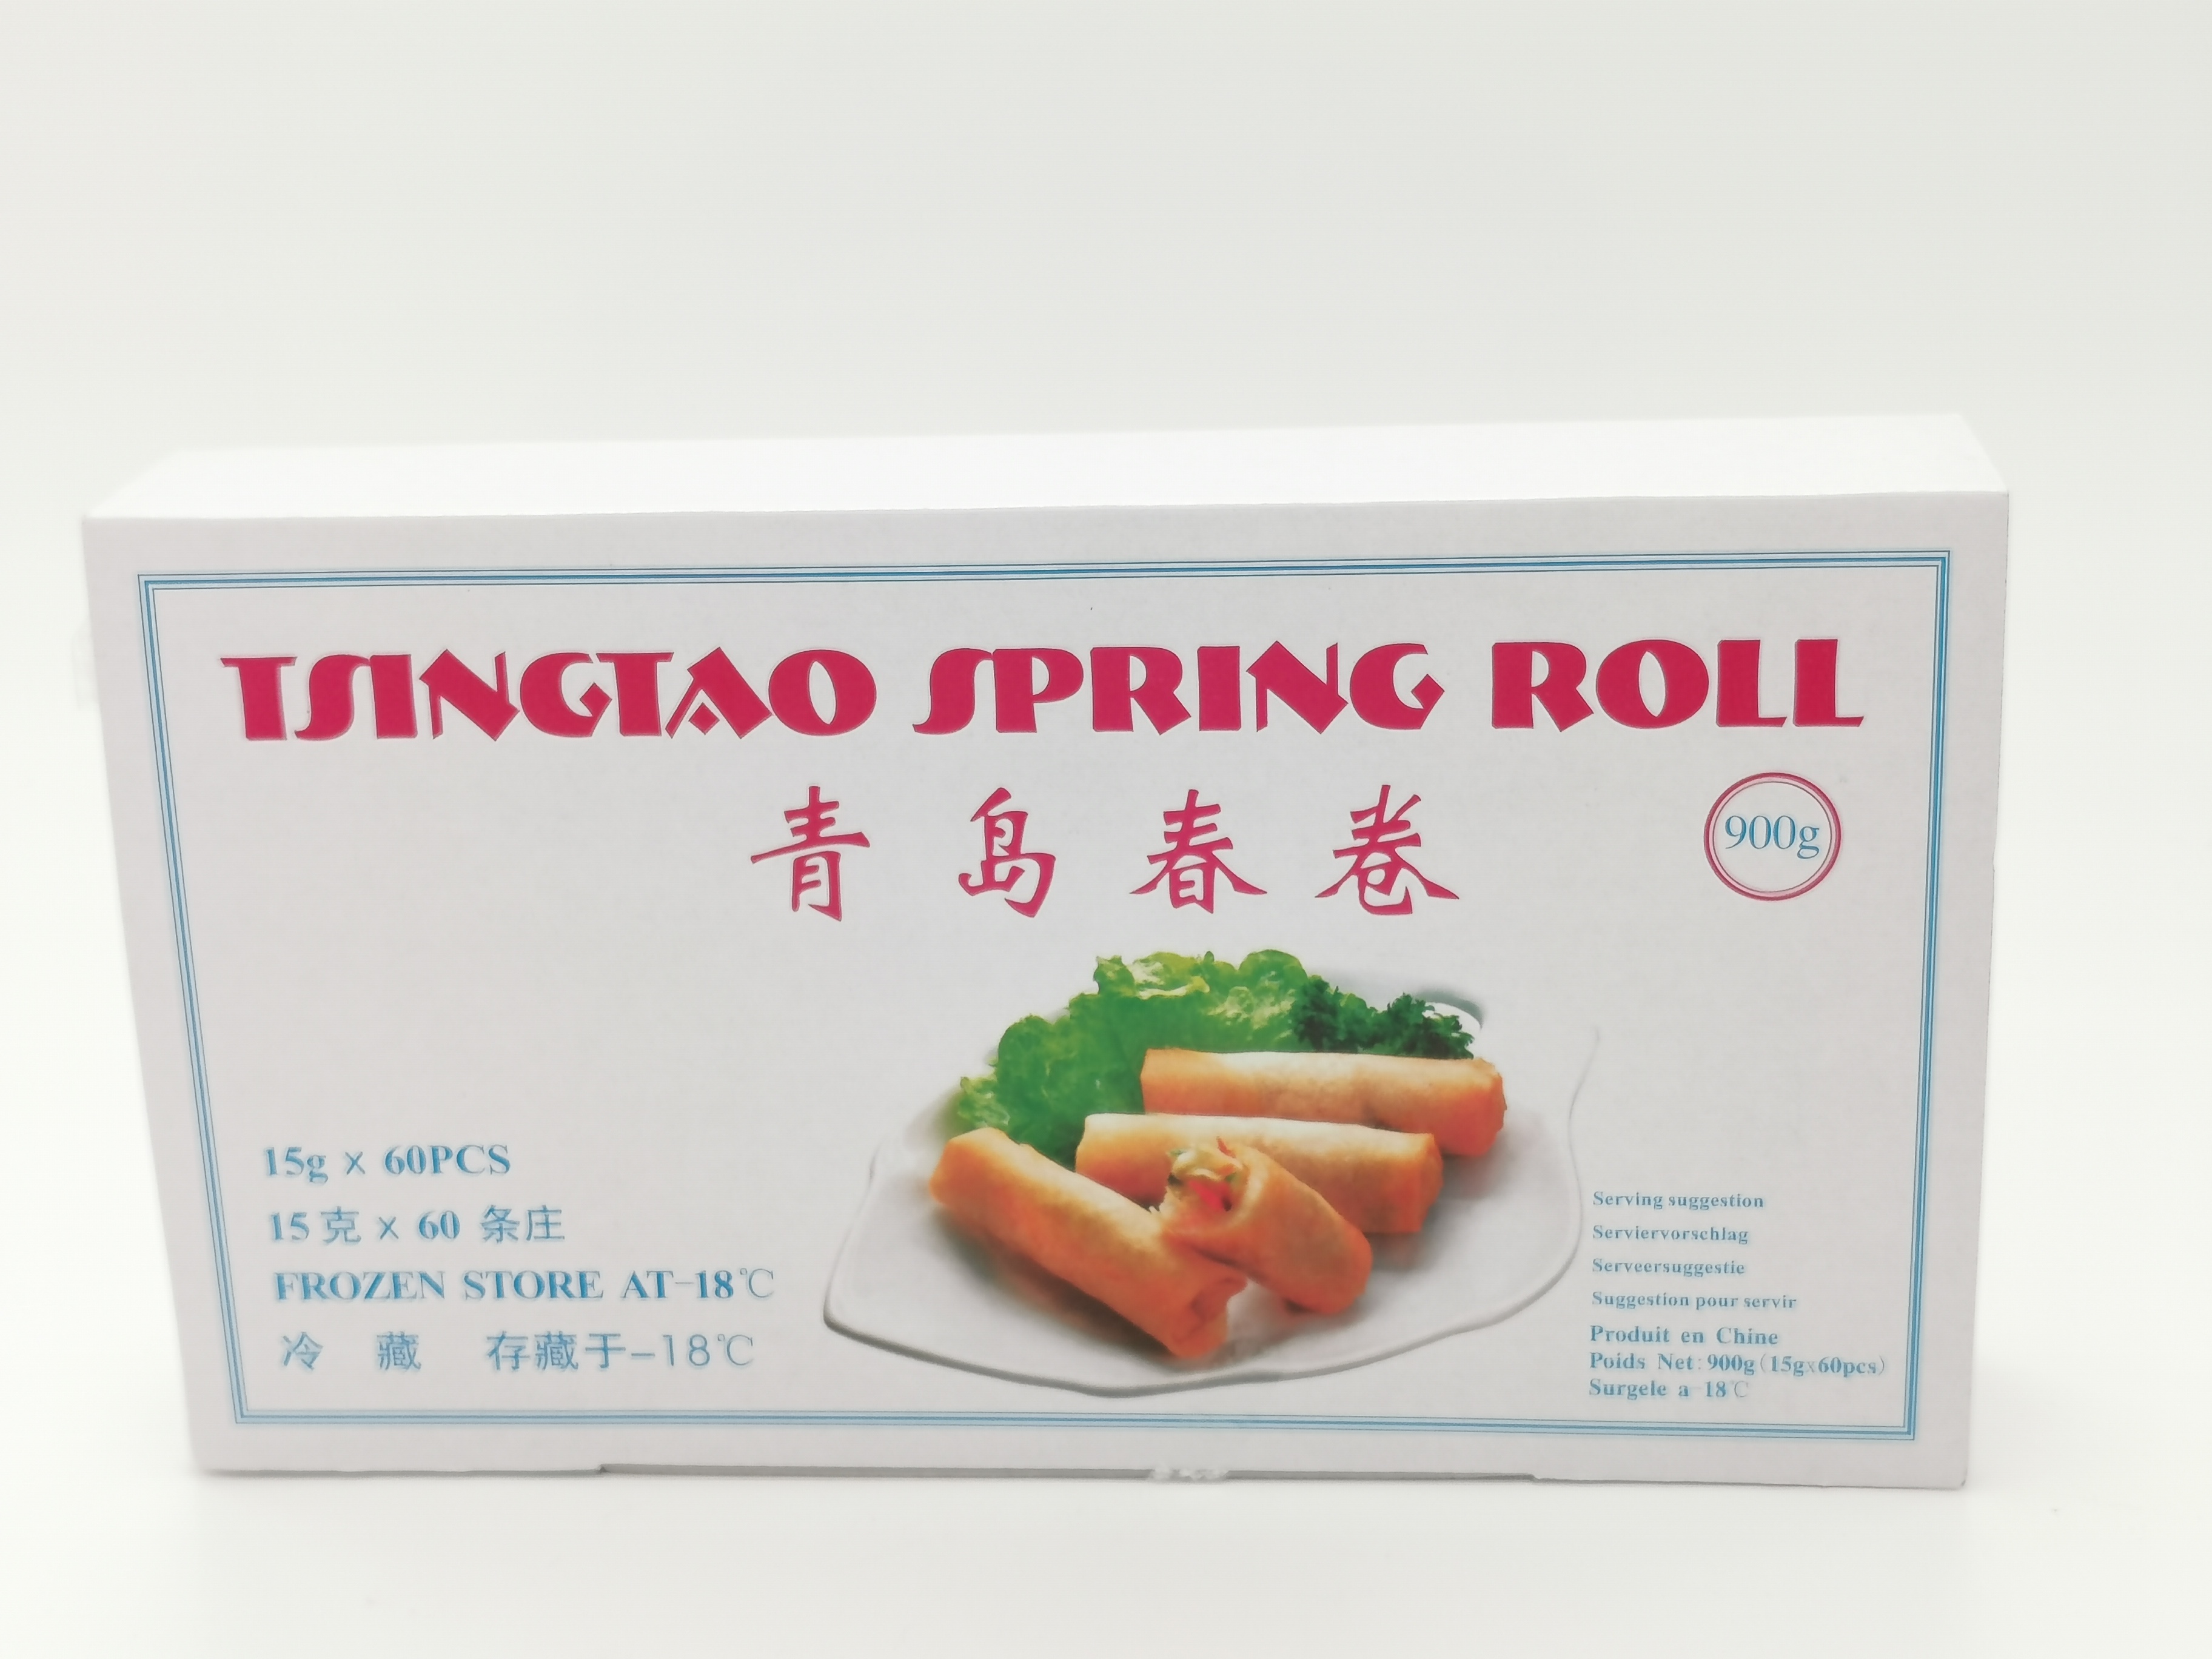 Tsingtao Spring Roll 900g